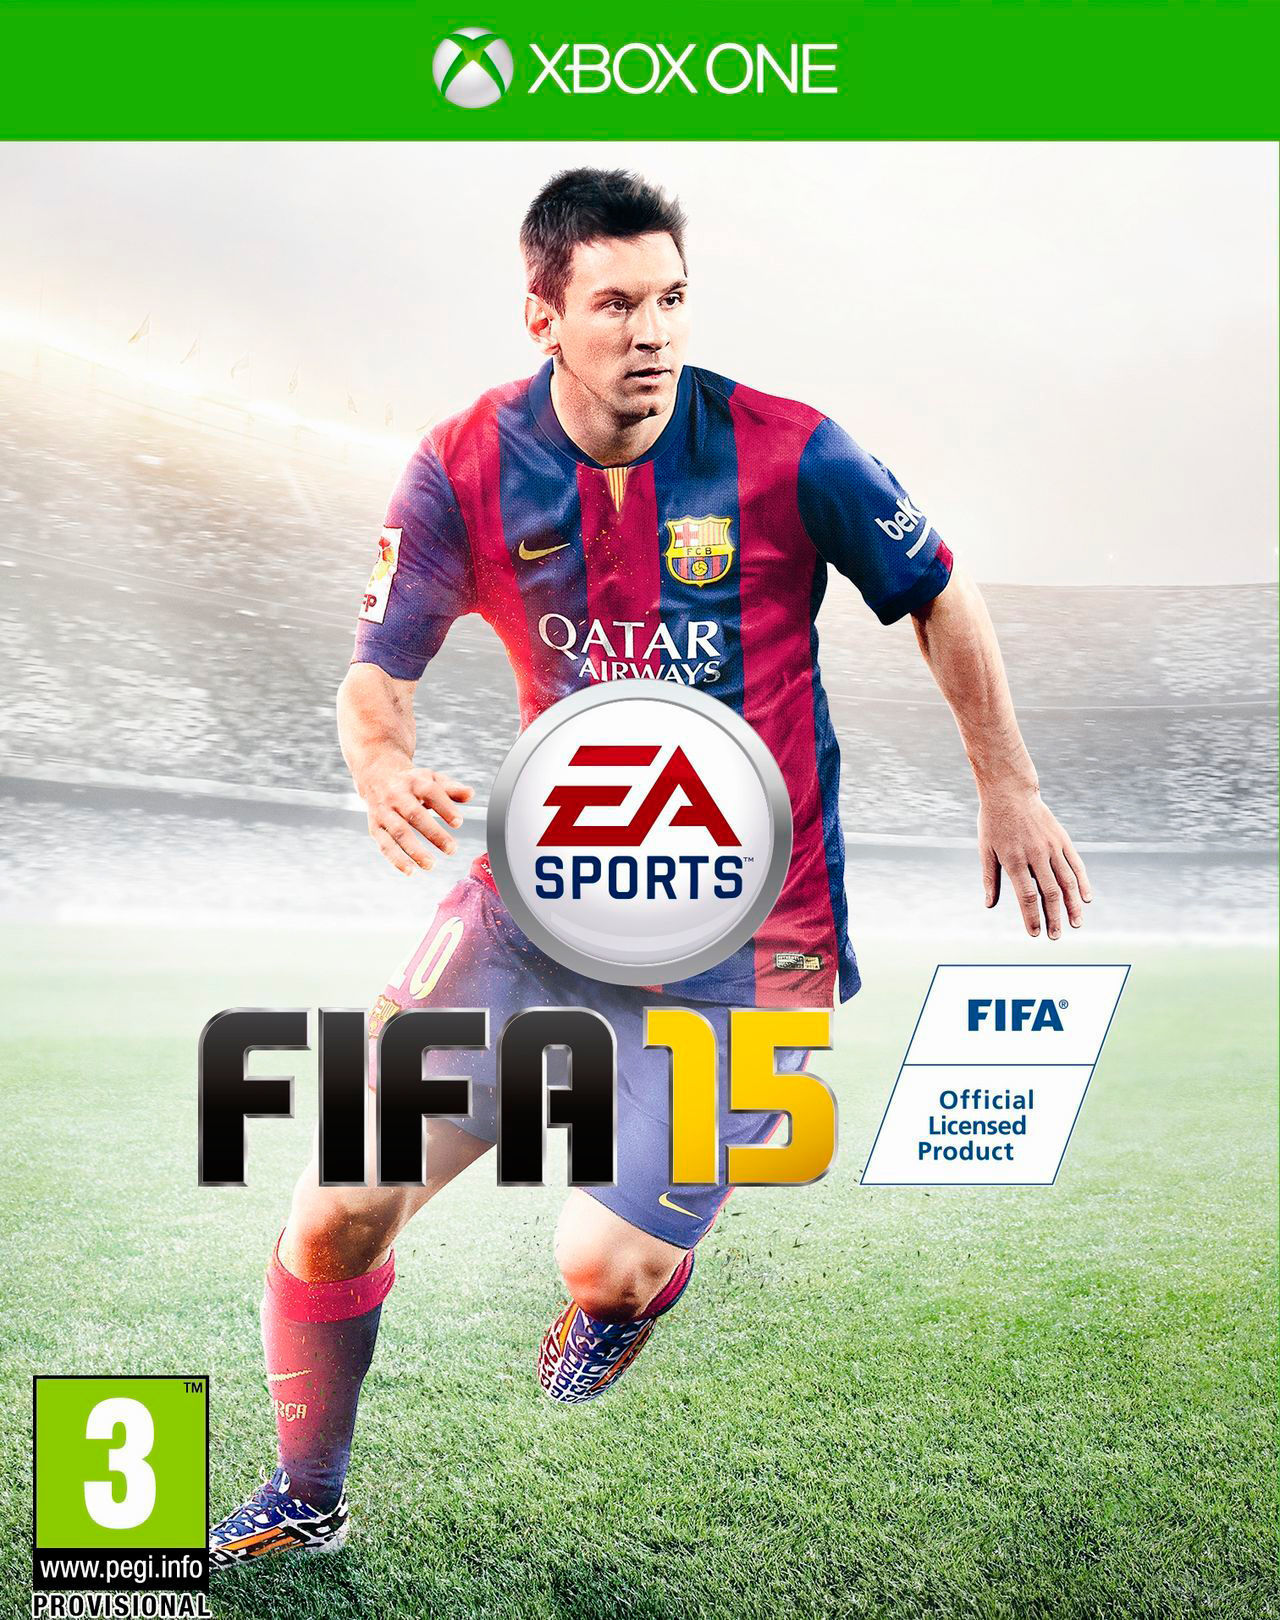 Leo Messi repite portada en FIFA 15